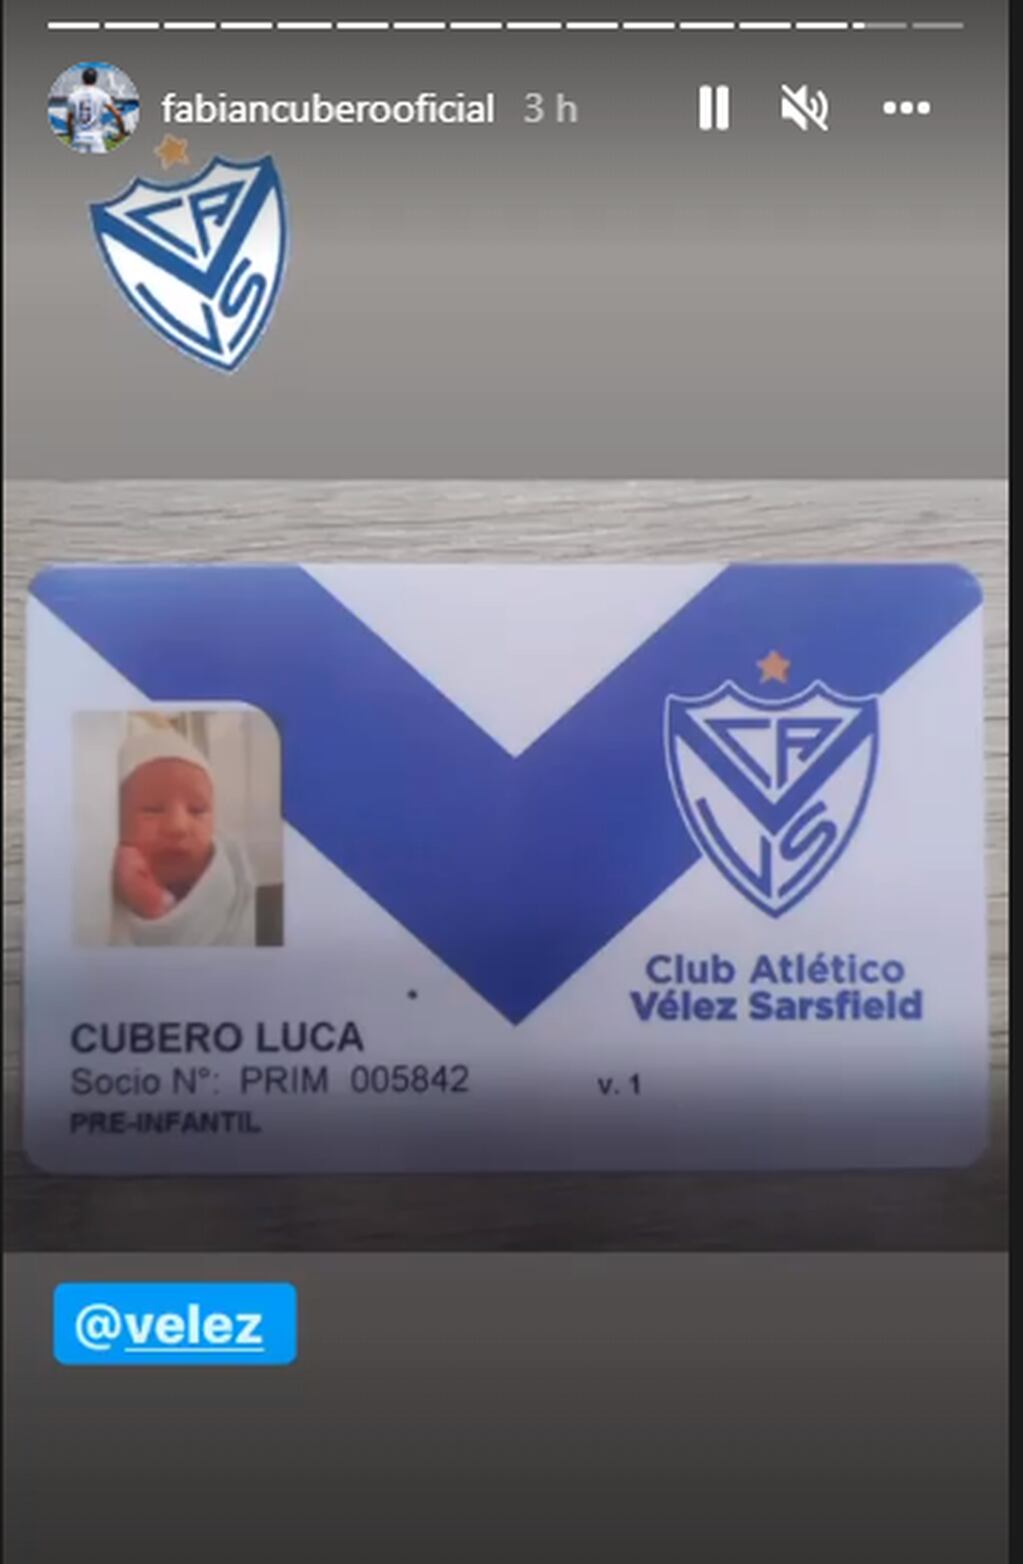 Luca Cubero ya es socio de Vélez Sarsfield.